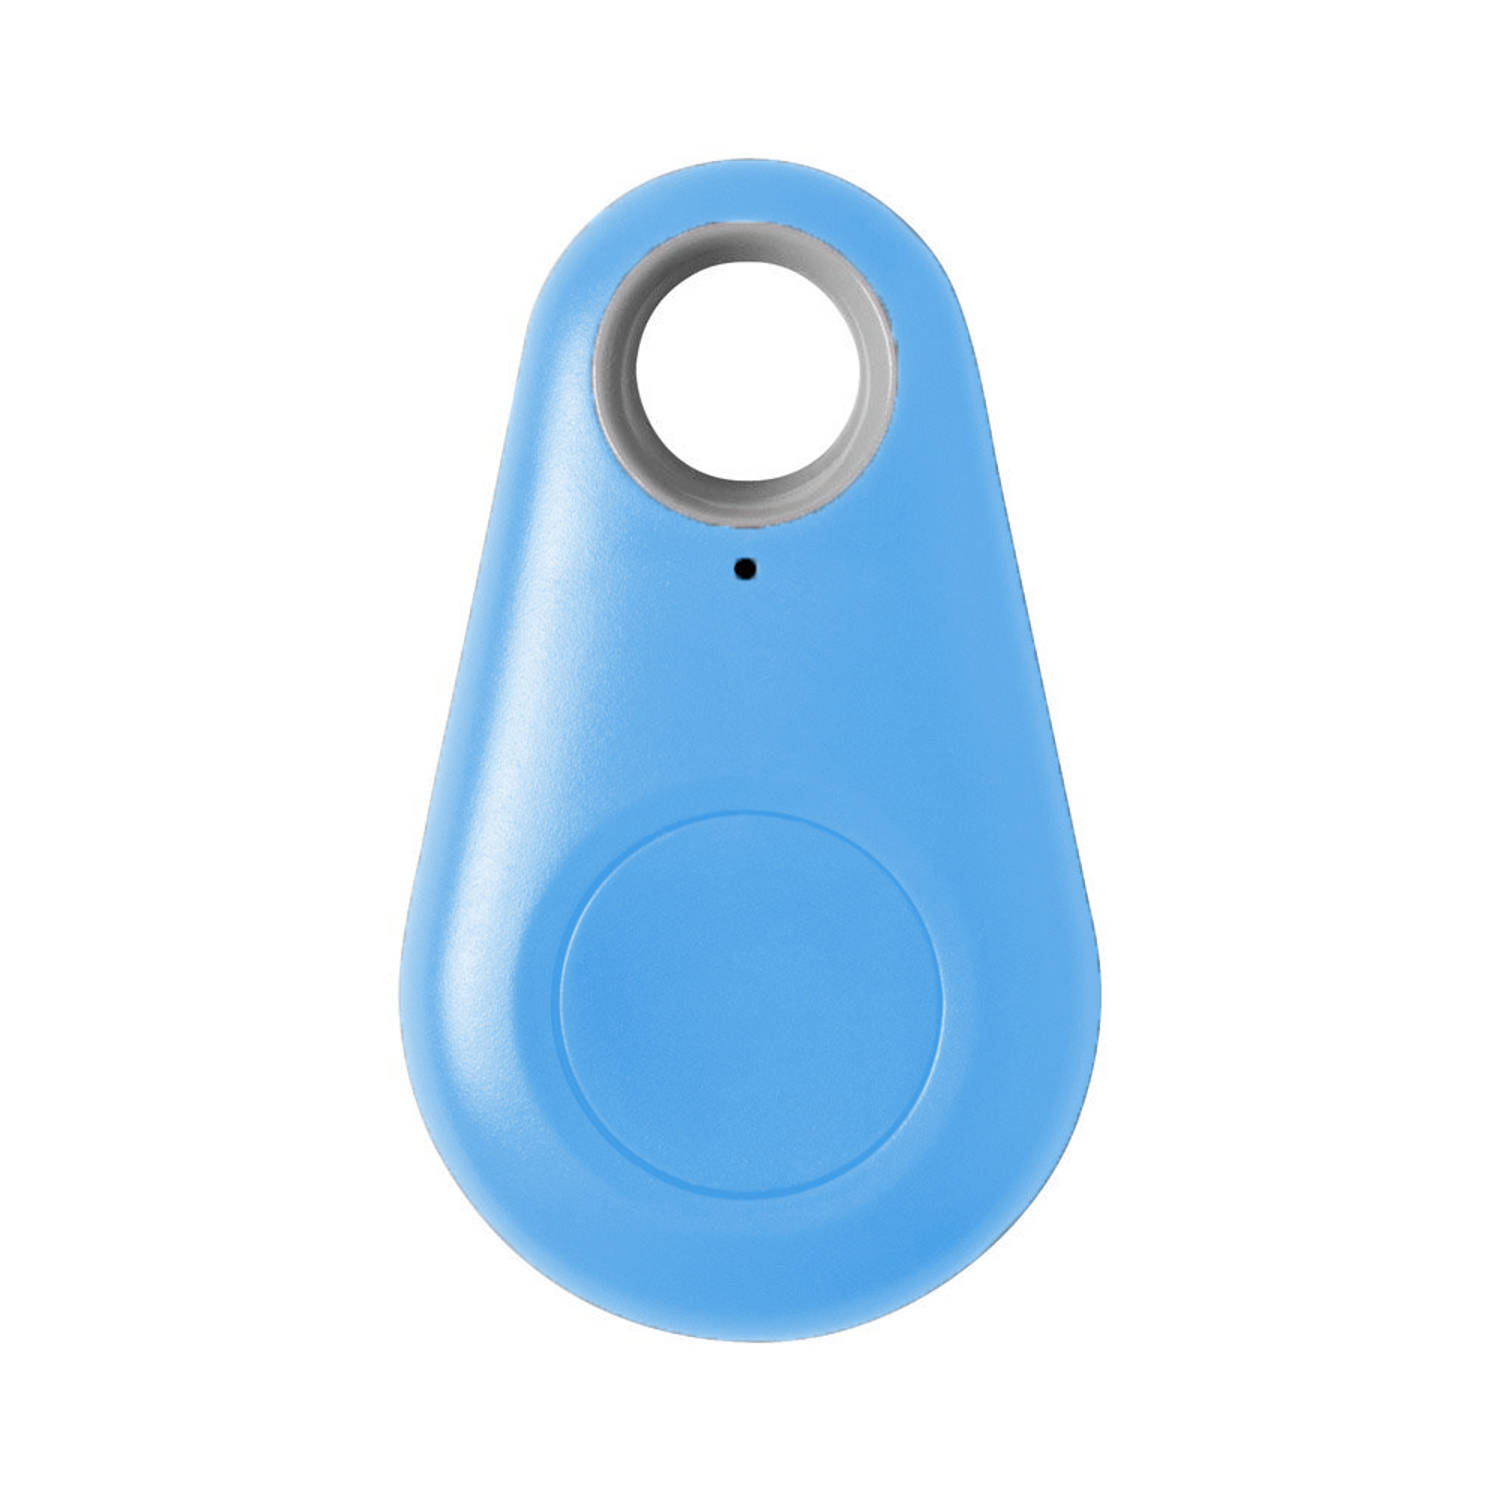 Basey Keyfinder Sleutelhanger Sleutelvinder Bluetooth Sleutelzoeker Blauw